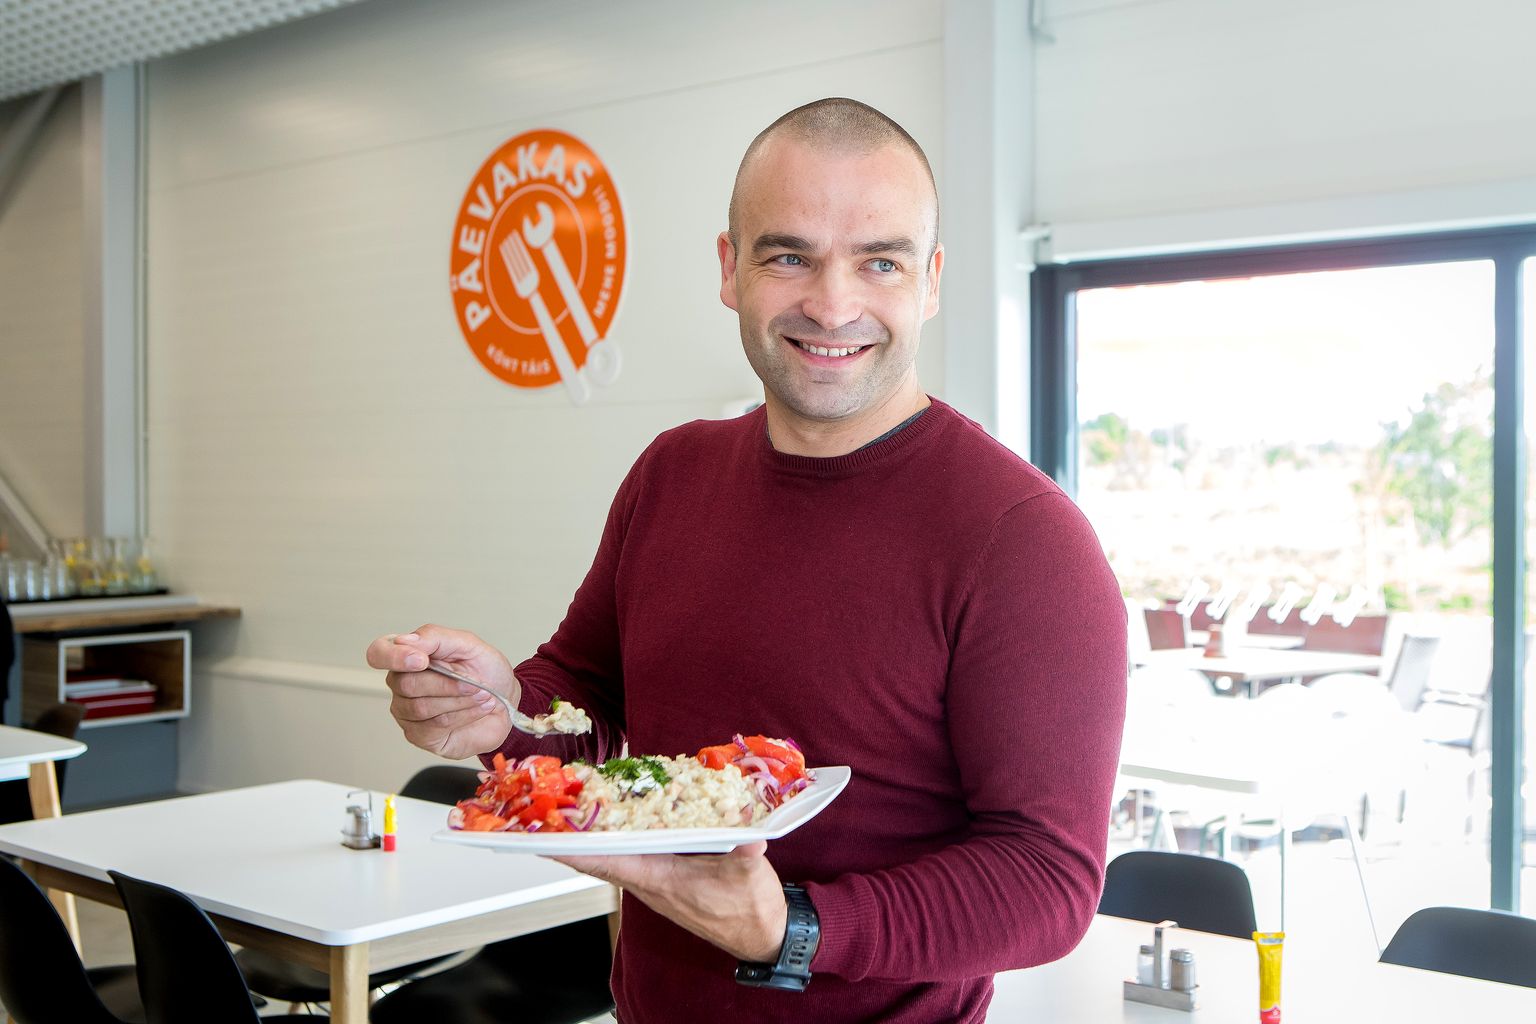 AASTA ON LÄINUD EDUKALT: Päevaka eestvedaja Tarmo Vipre saab aasta pärast avamist mõelda söögikoha laienemisele.